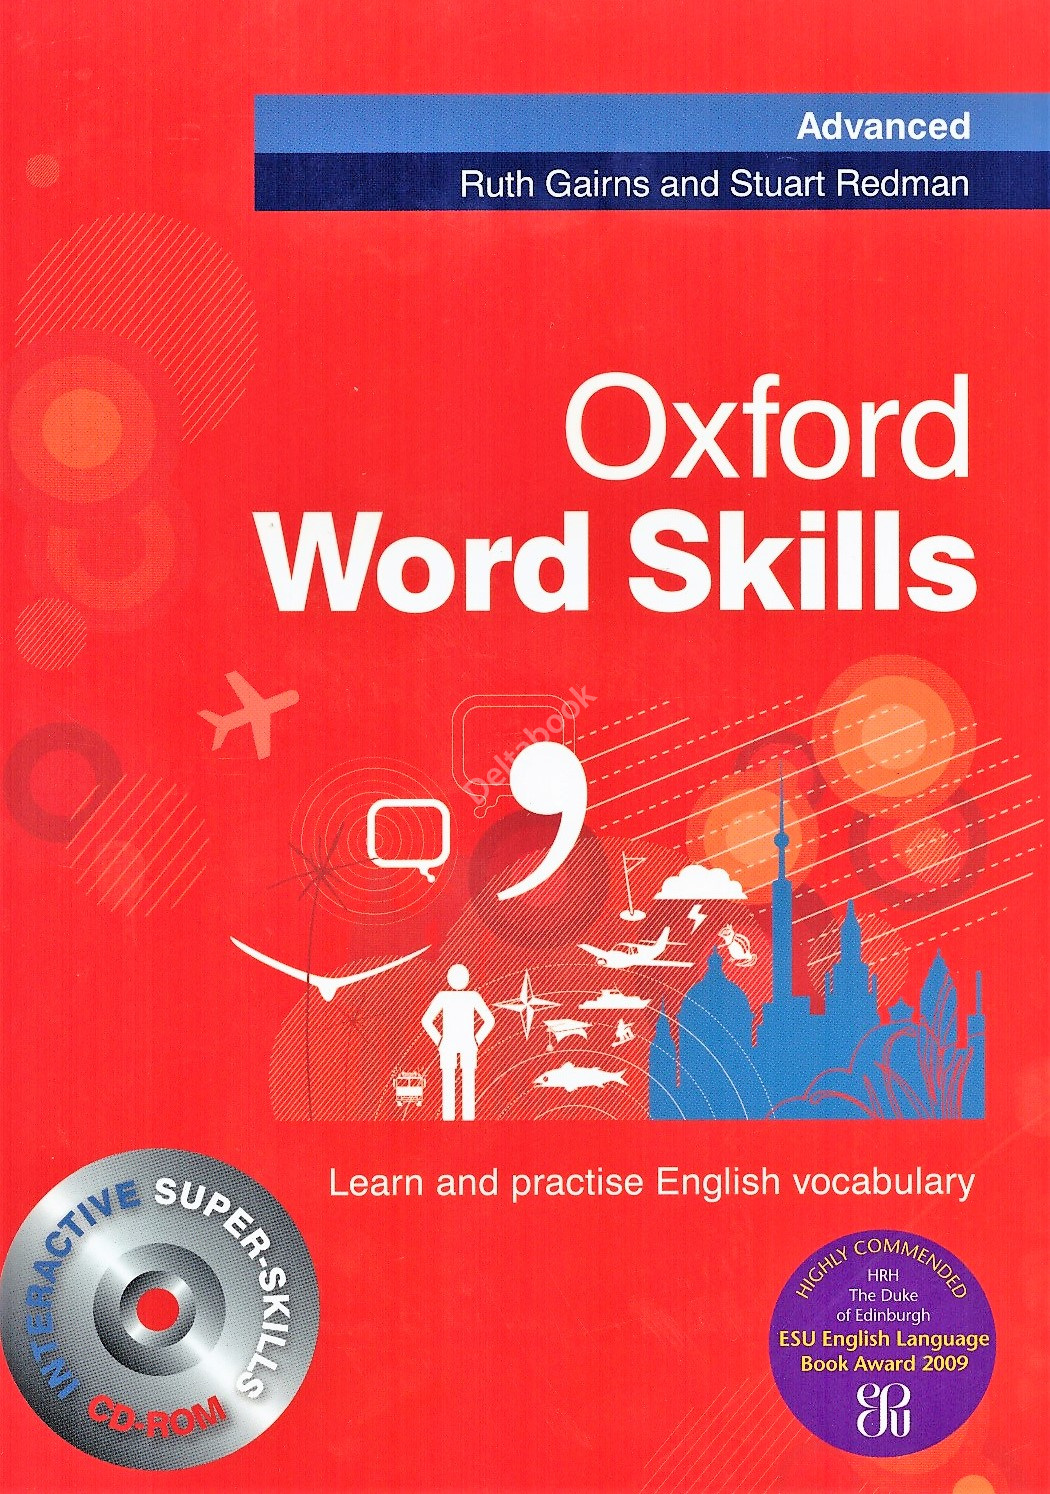 Oxford Word Skills - Advanced